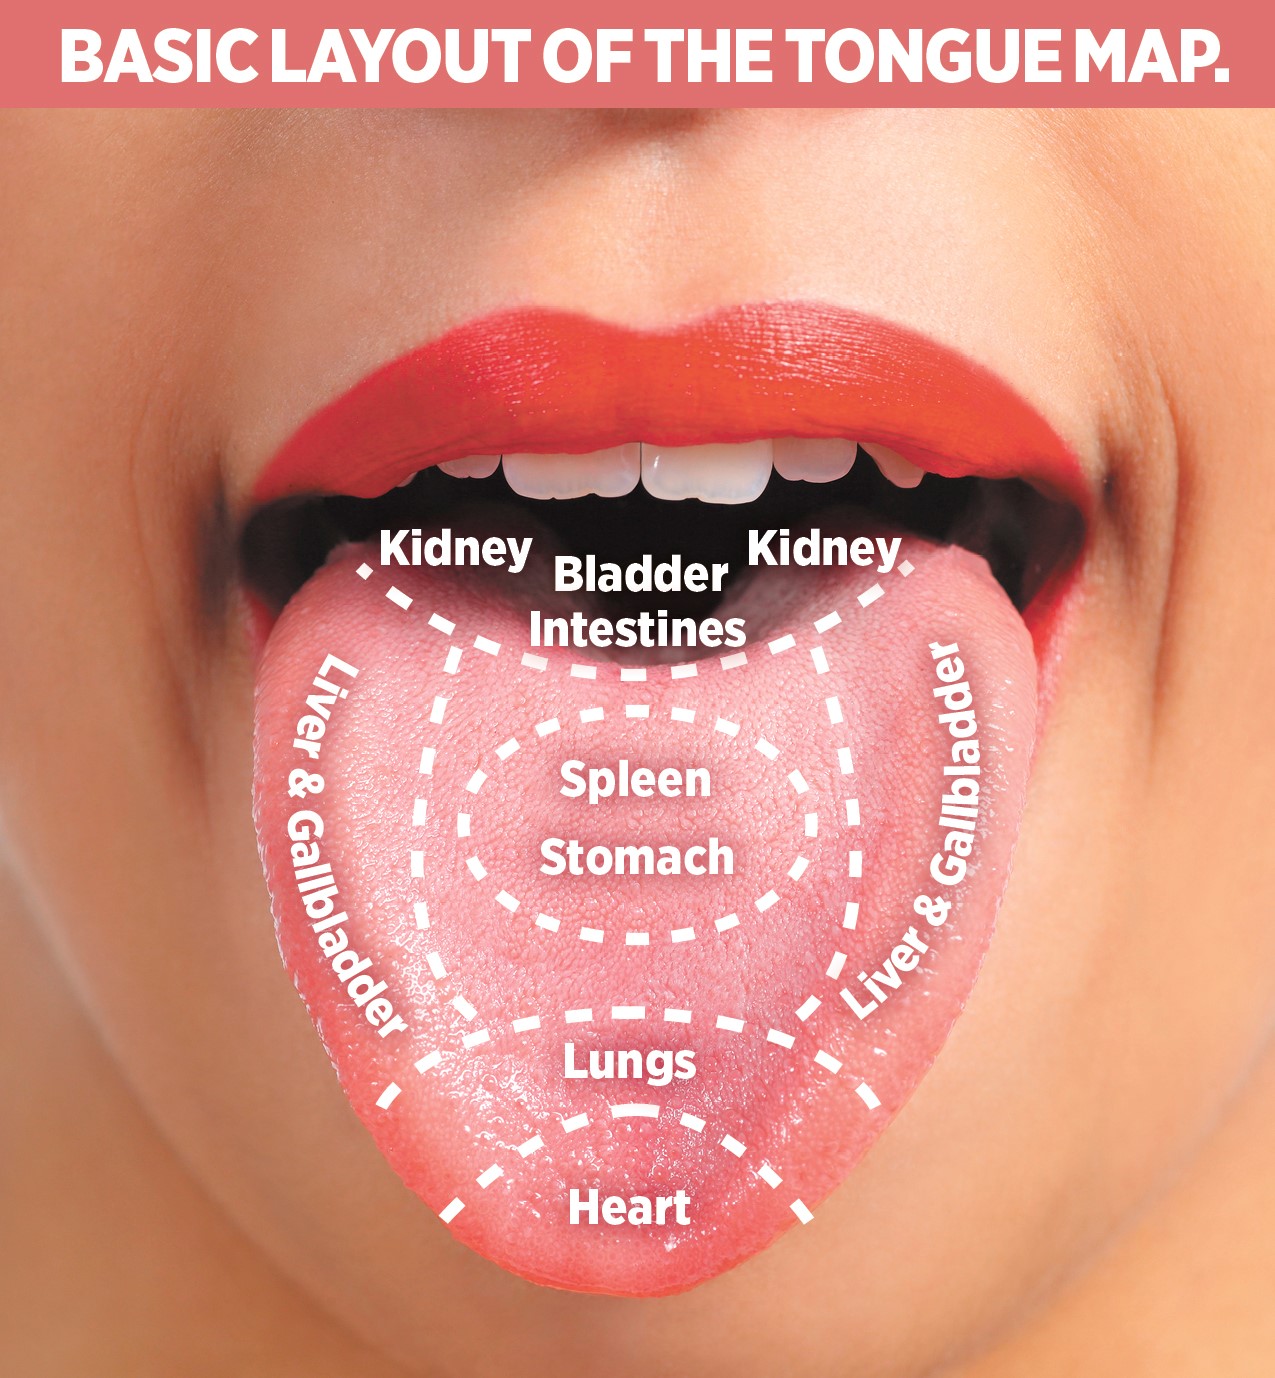 نشانه های بیماری روی زبان